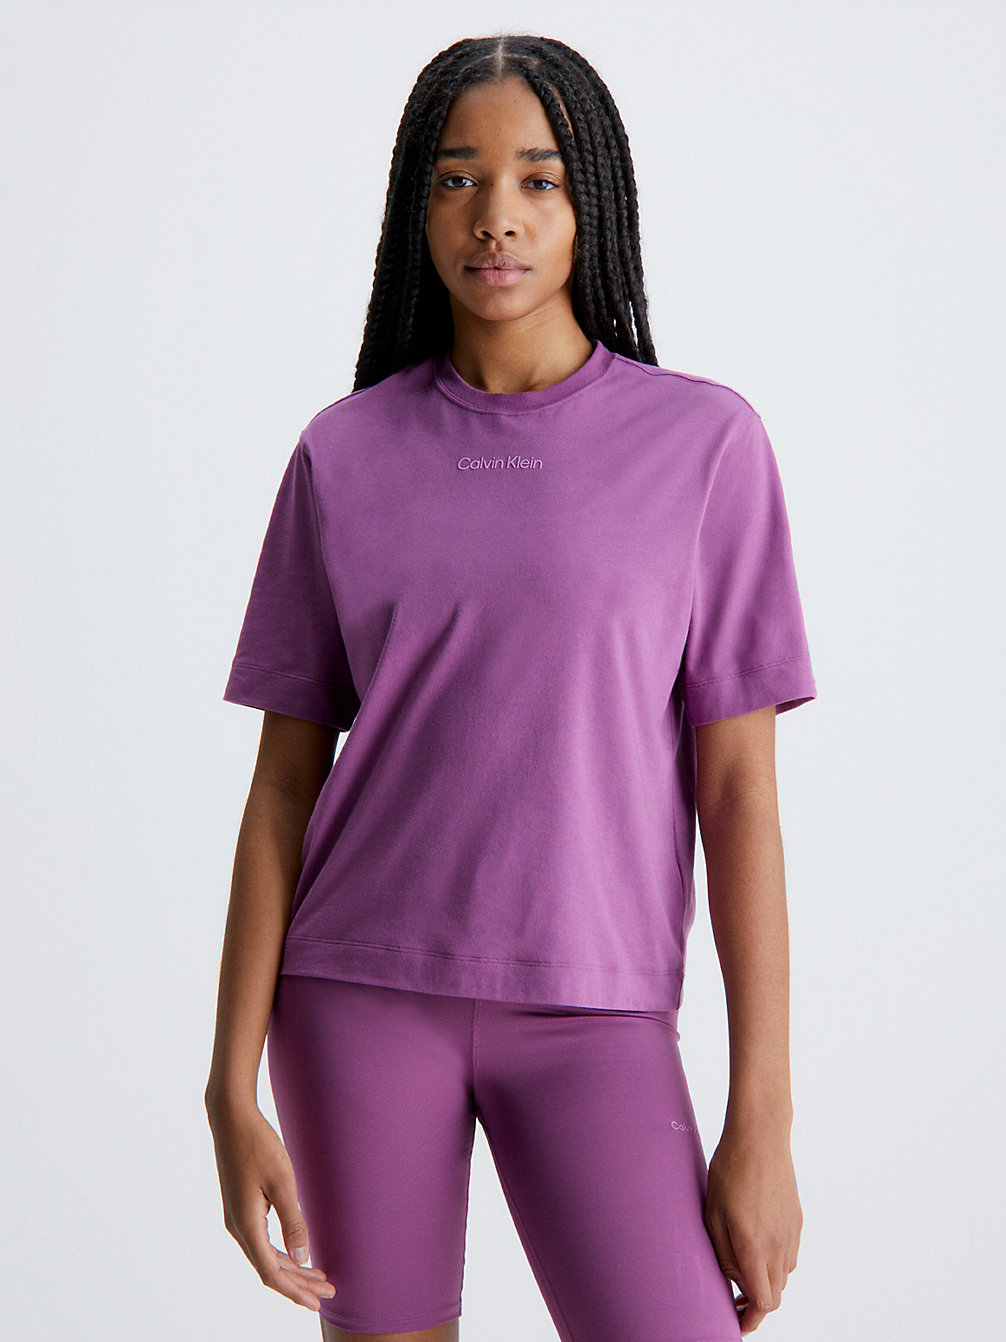 AMETHYST > Sport T-Shirt > undefined dames - Calvin Klein